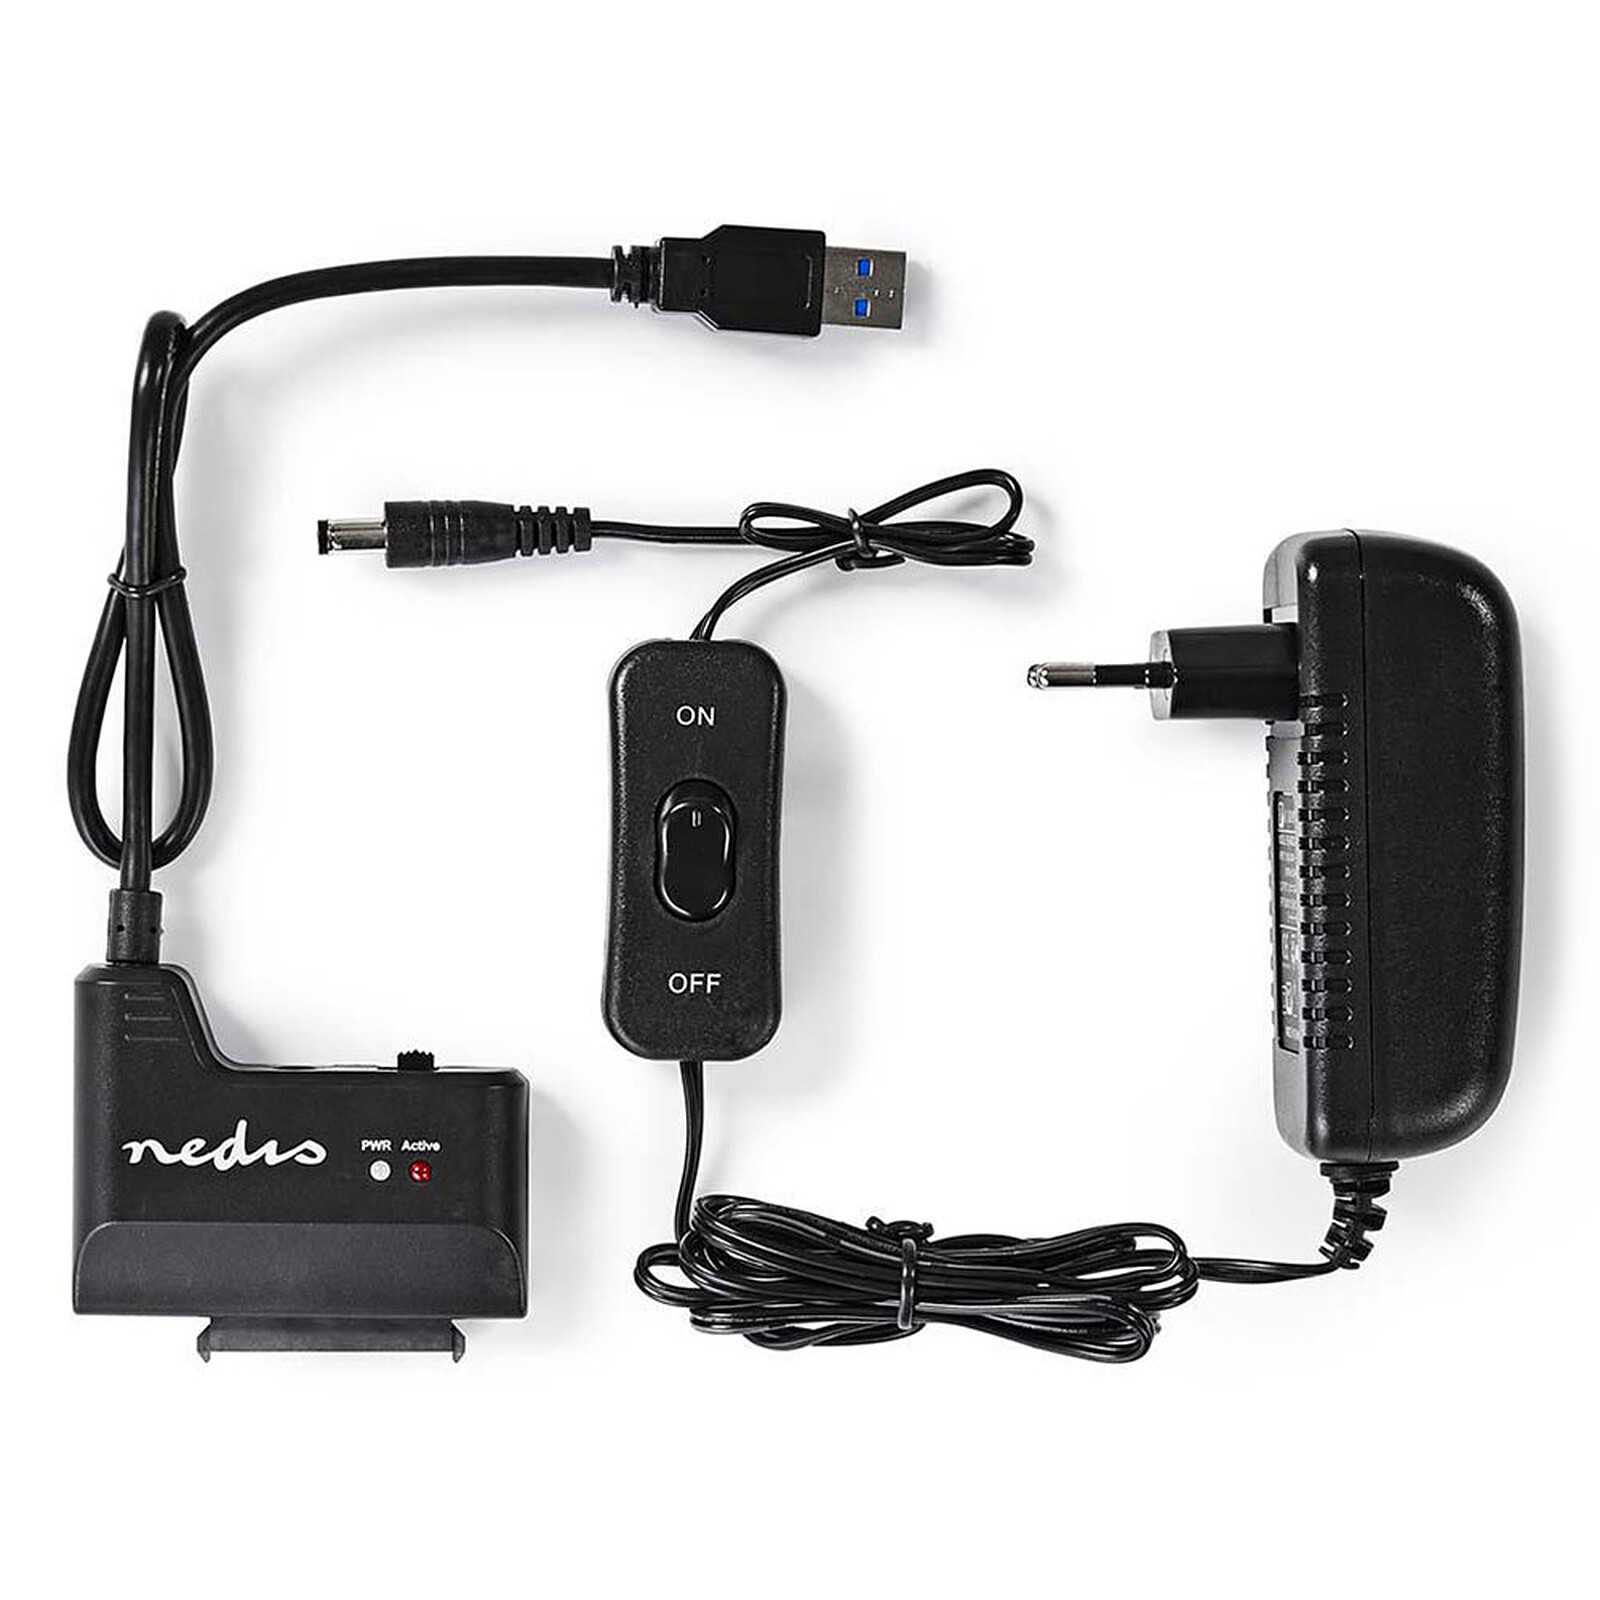 Adaptateur et convertisseur GENERIQUE CABLING® Câble Adaptateur USB 3.0  vers disque dur SATA 22 broches 2,5"" avec câble  d'alimentation USB